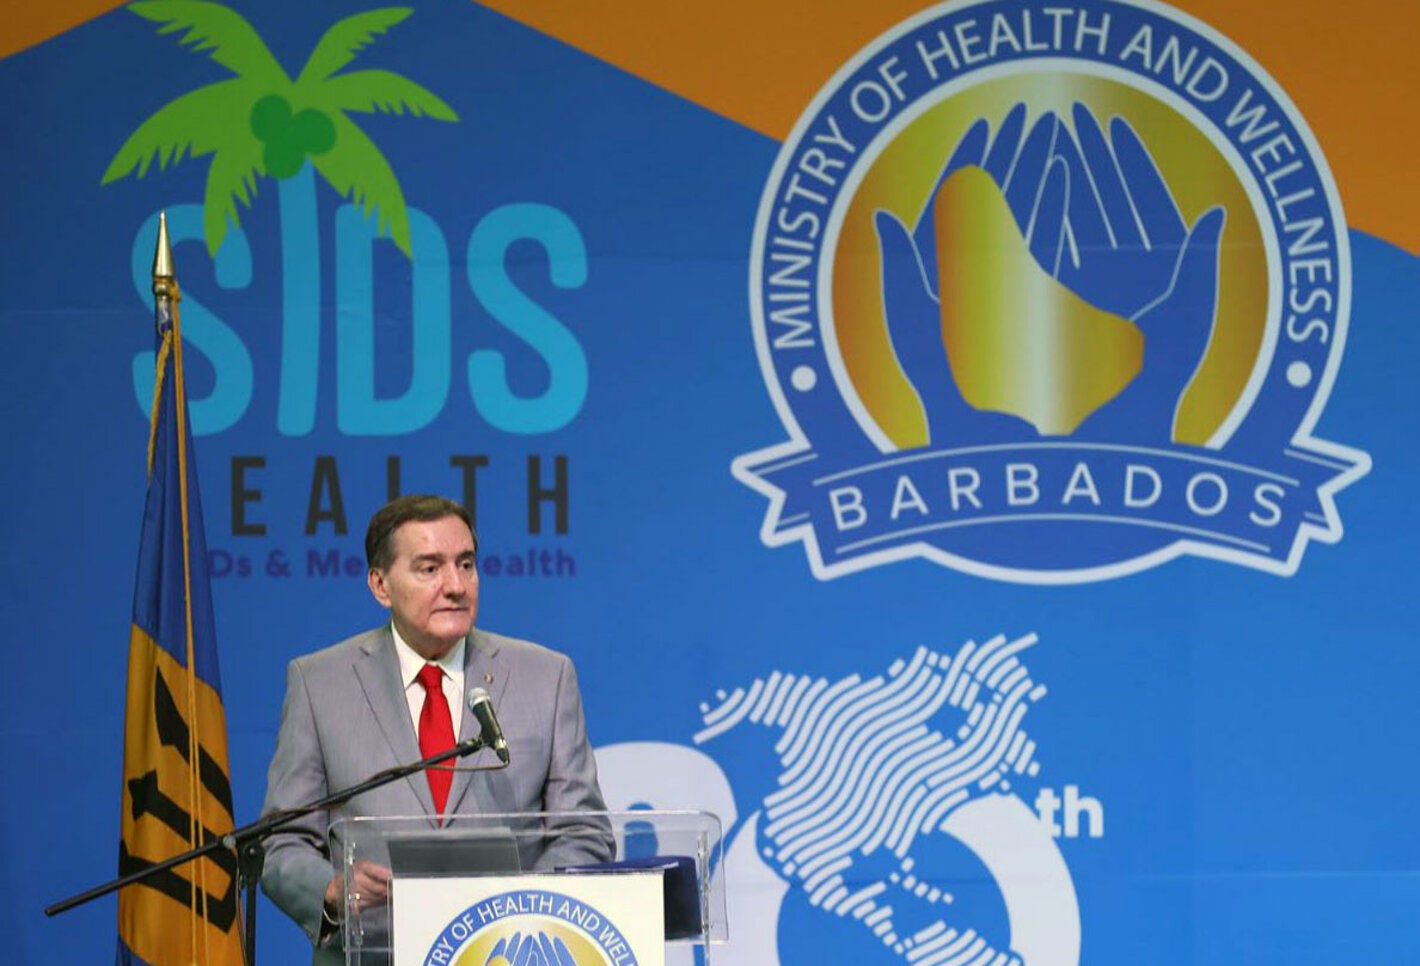 El Dr. Jarbas Barbosa, instó a los pequeños Estados insulares en desarrollo (PEID) del Caribe a asegurar el "liderazgo político al más alto nivel" para abordar el problema de las enfermedades no transmisibles (ENT) y la salud mental en esa región.